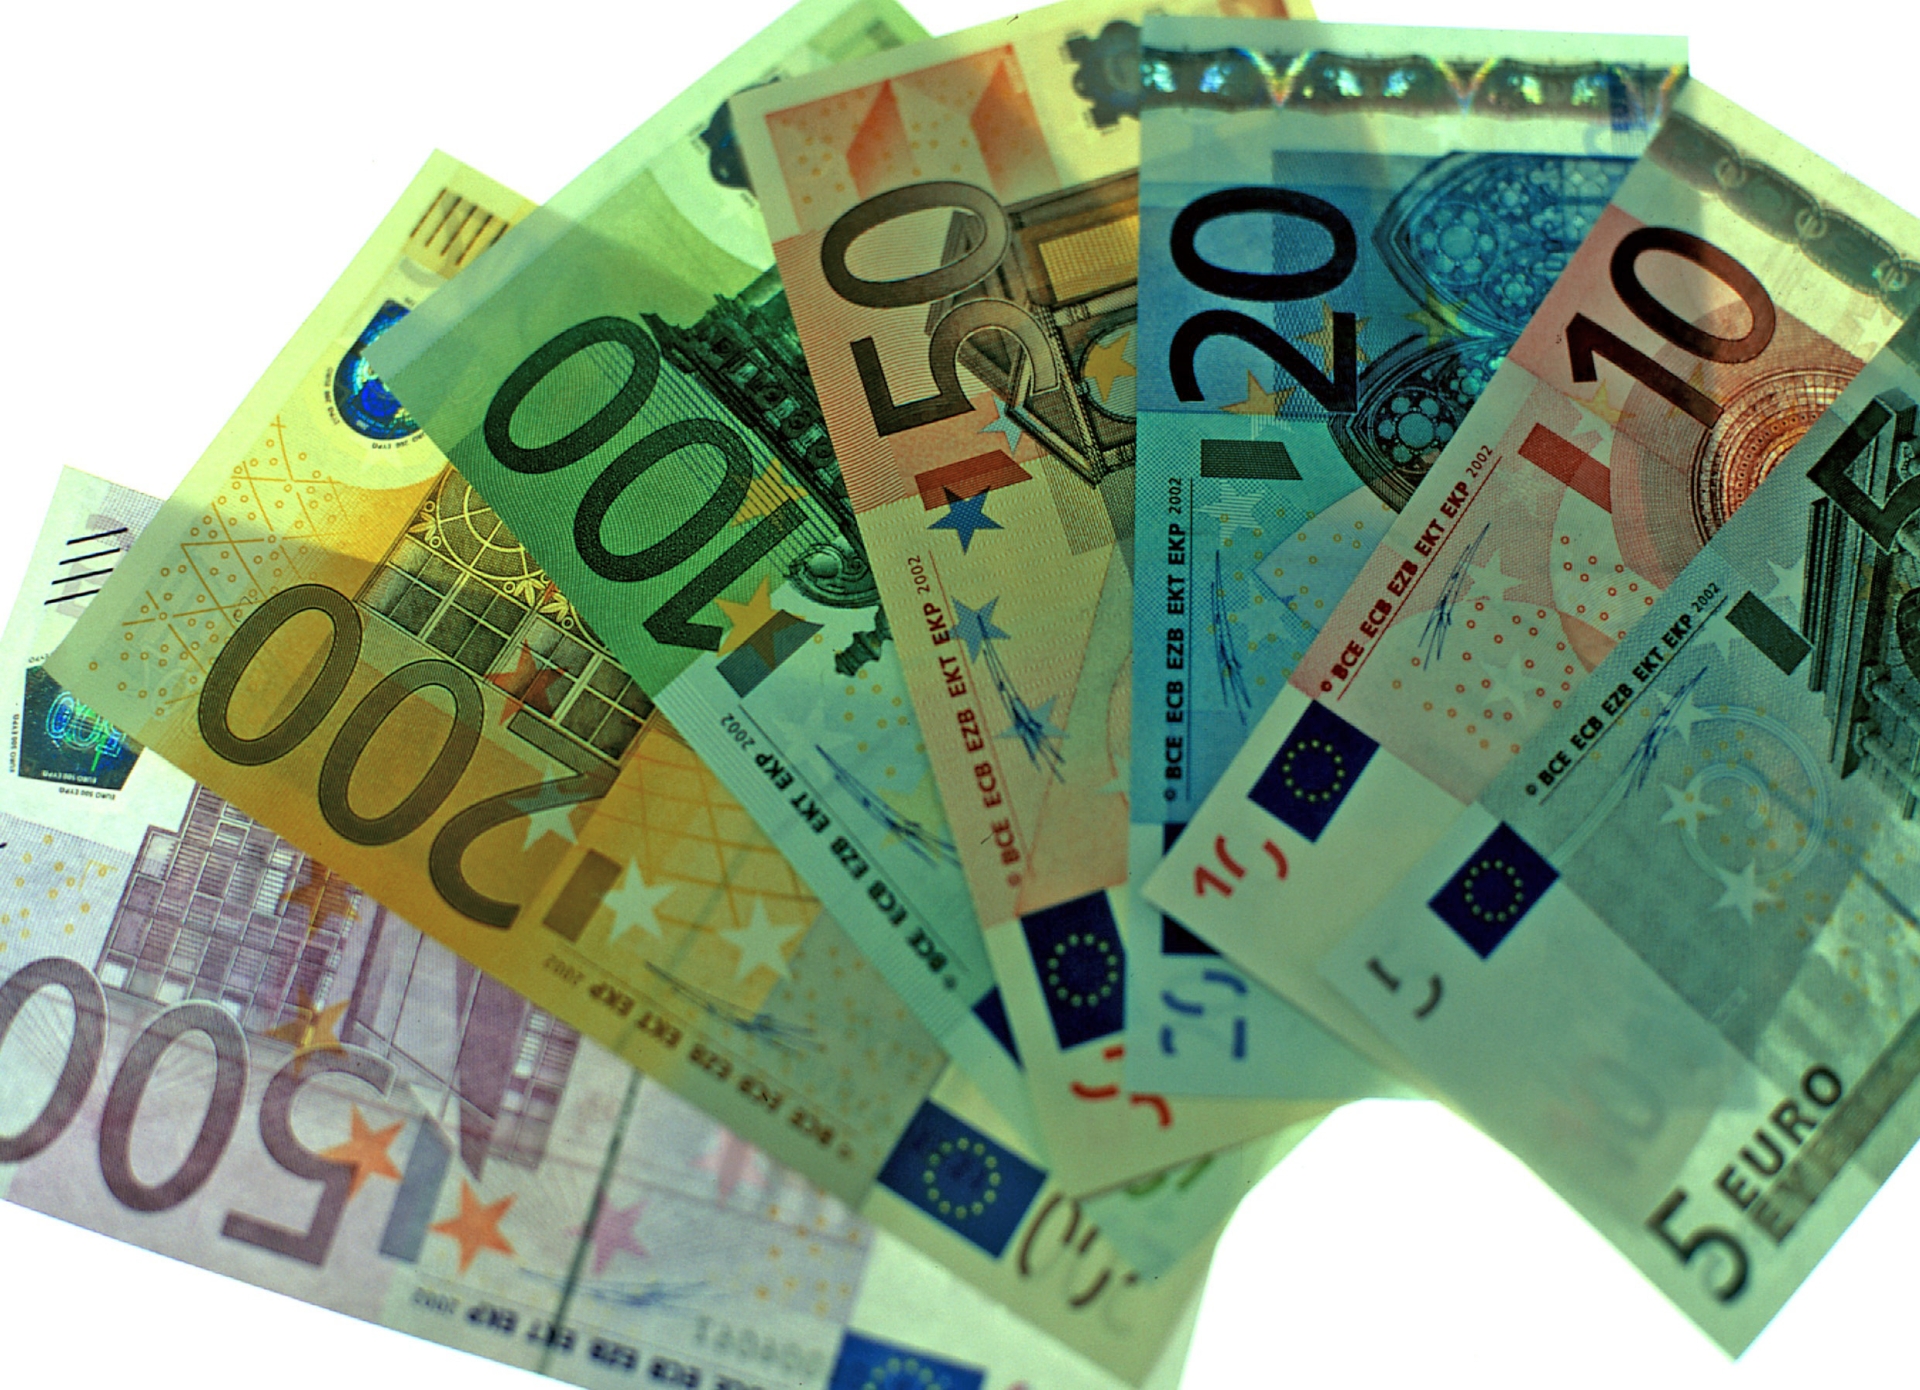 Les familles auront droit à un capital de près de 3500 euros